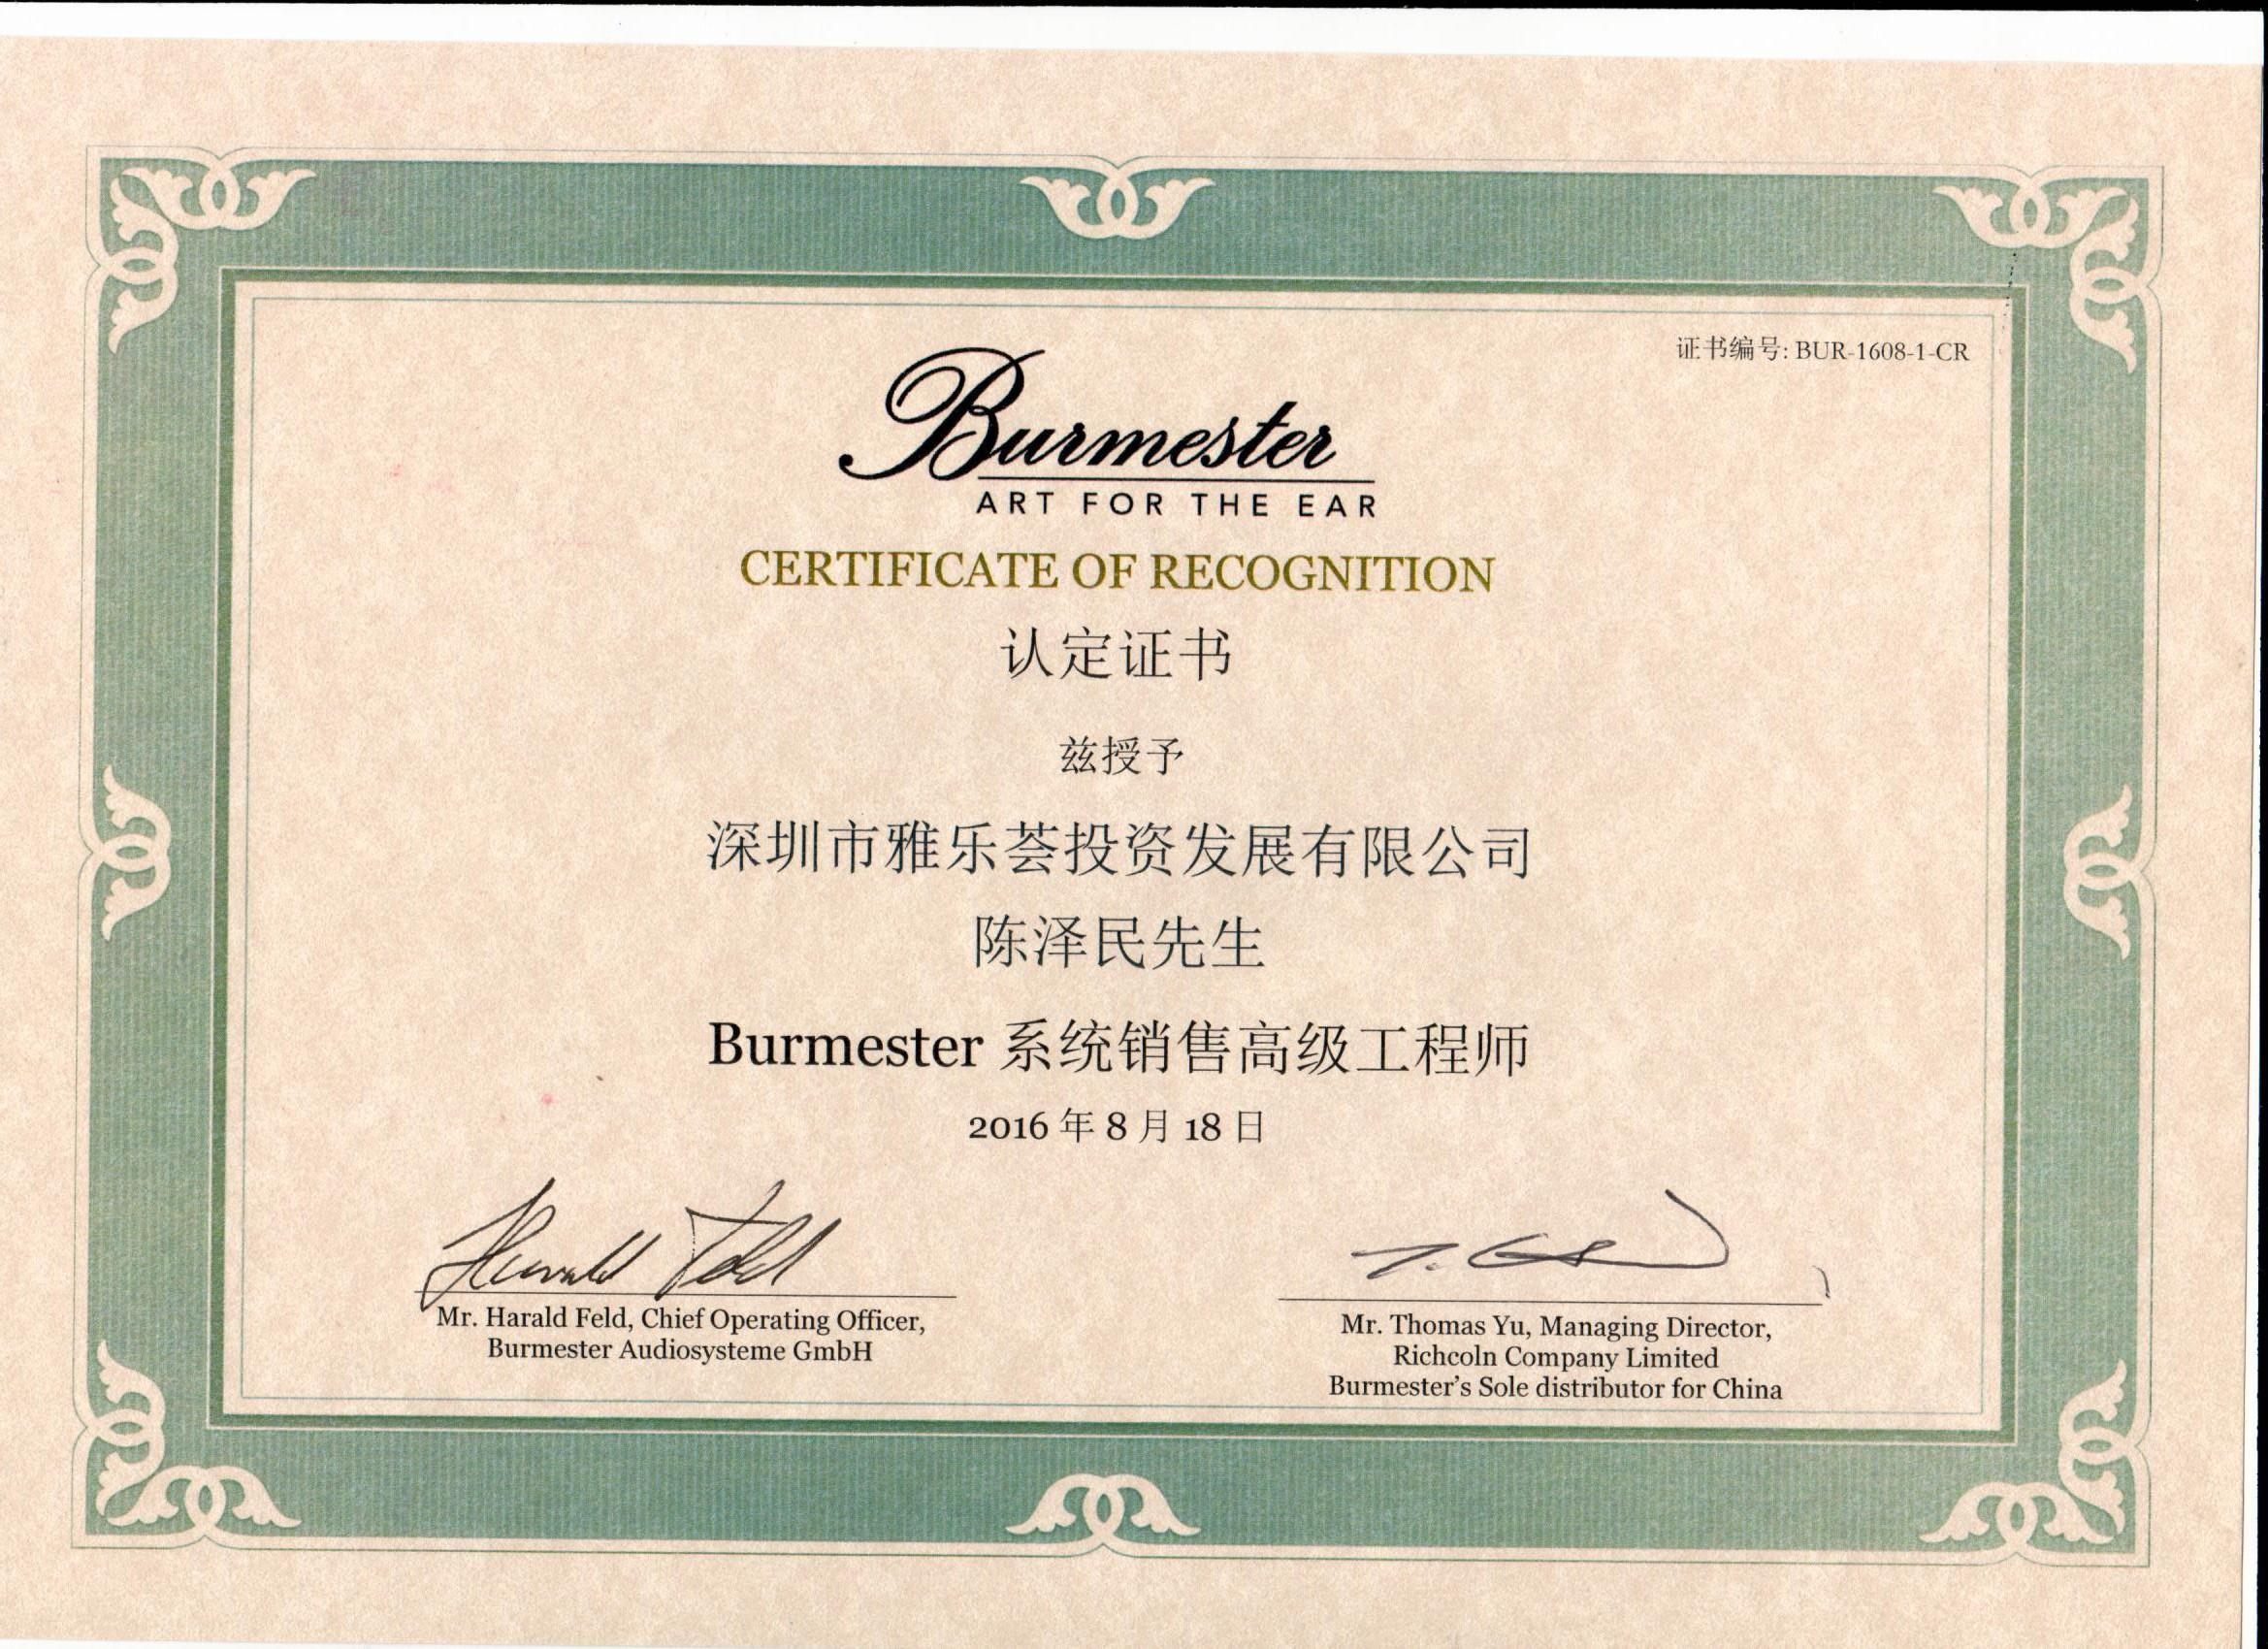 2016陈泽民被授予“Burmester系统销售高级工程师”称号